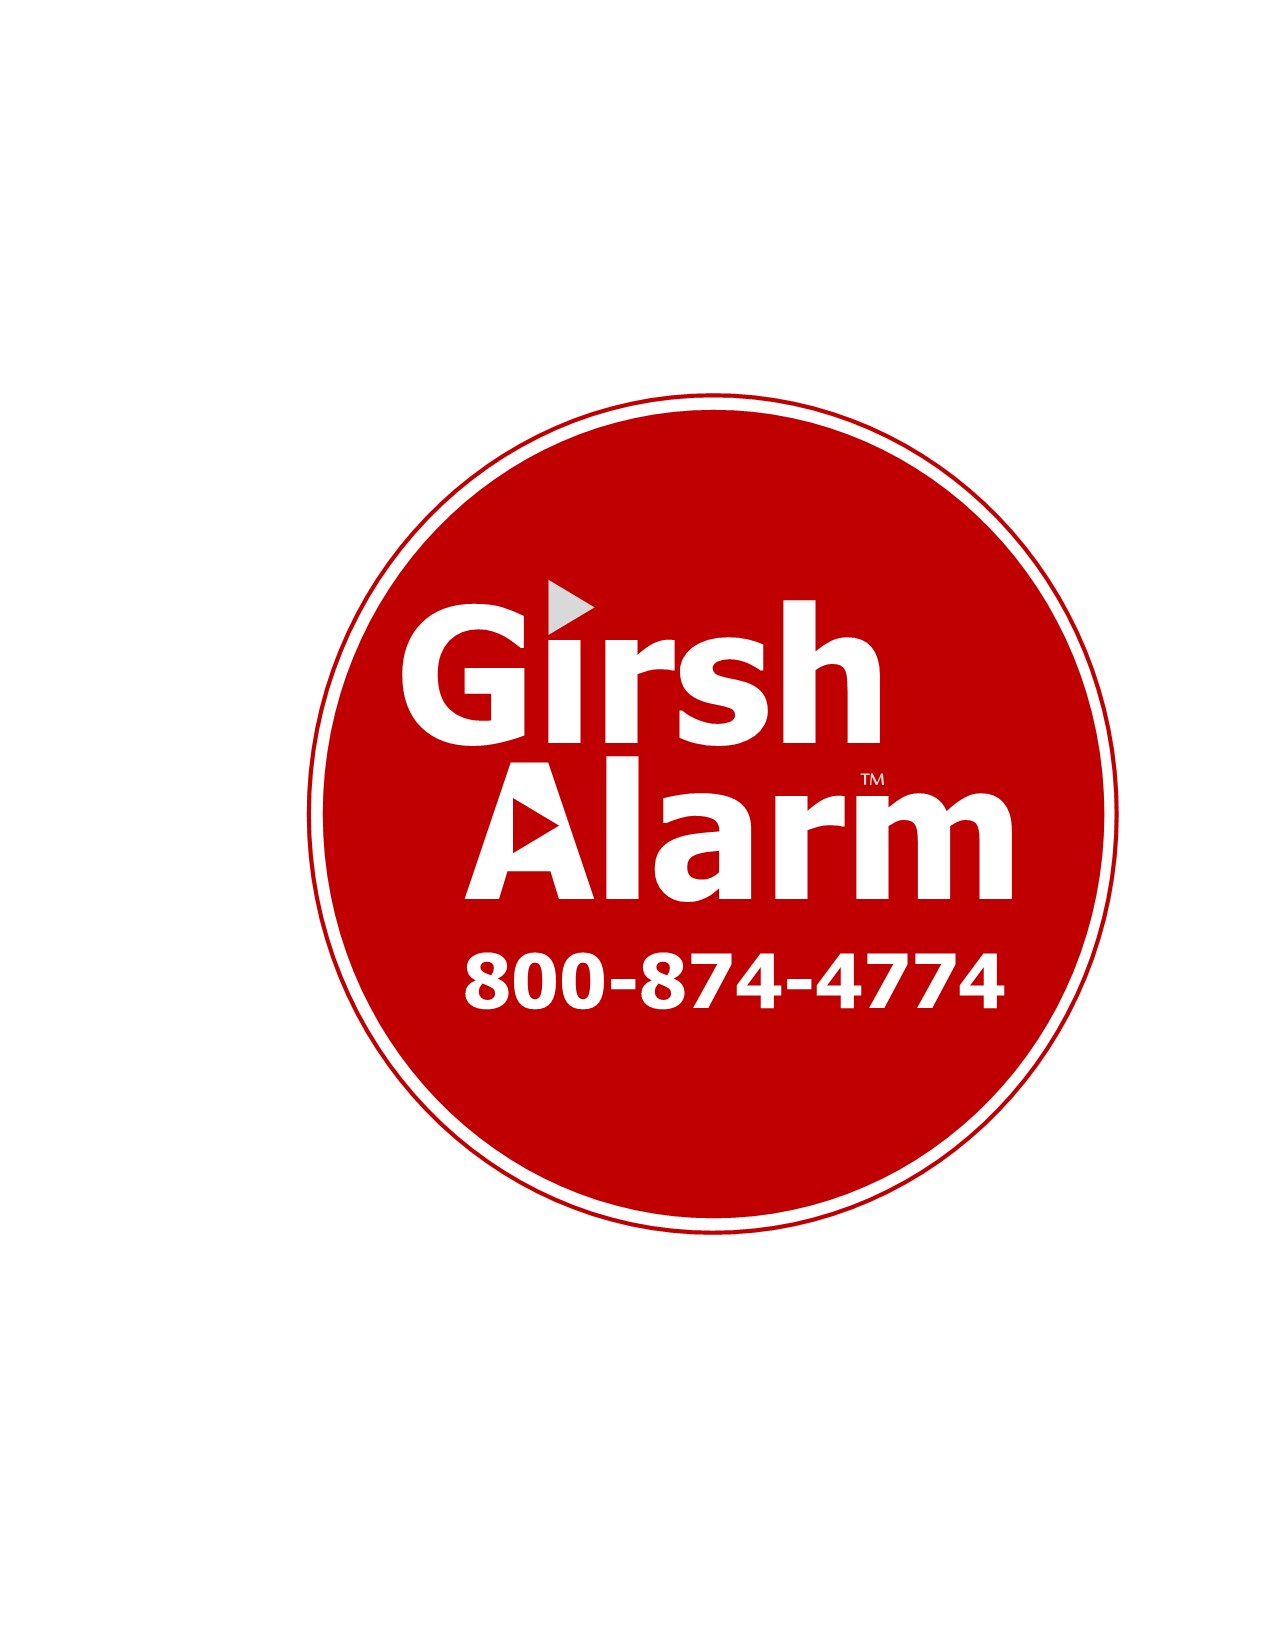 Girsh Alarm